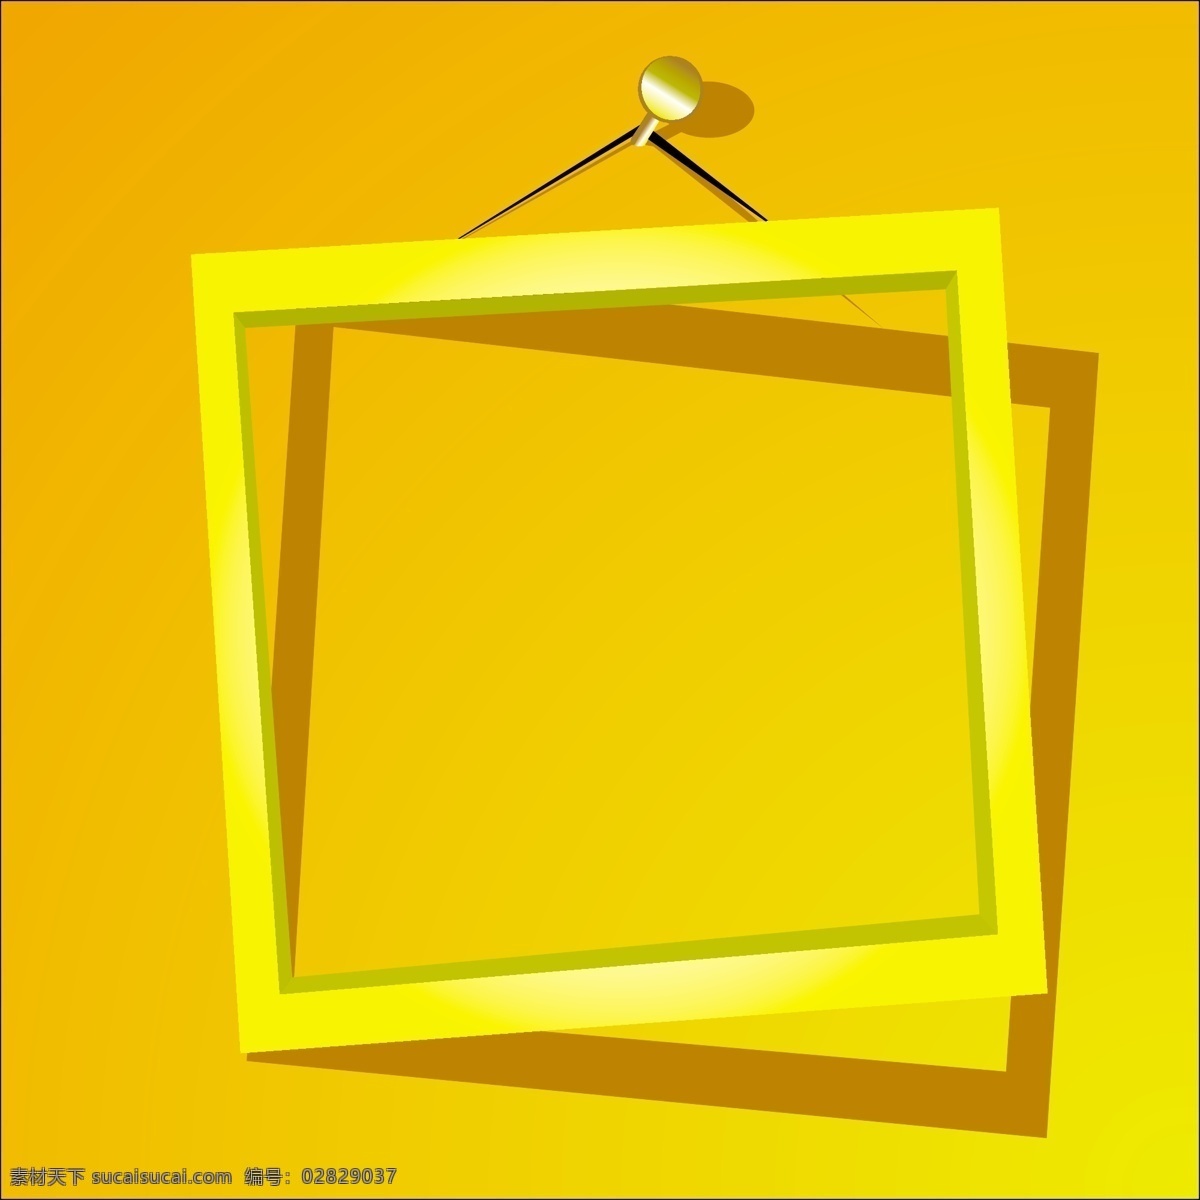 墙壁上的画框 相框 画框 装饰画 墙壁 挂画 钉子 边框相框 底纹边框 矢量素材 黄色